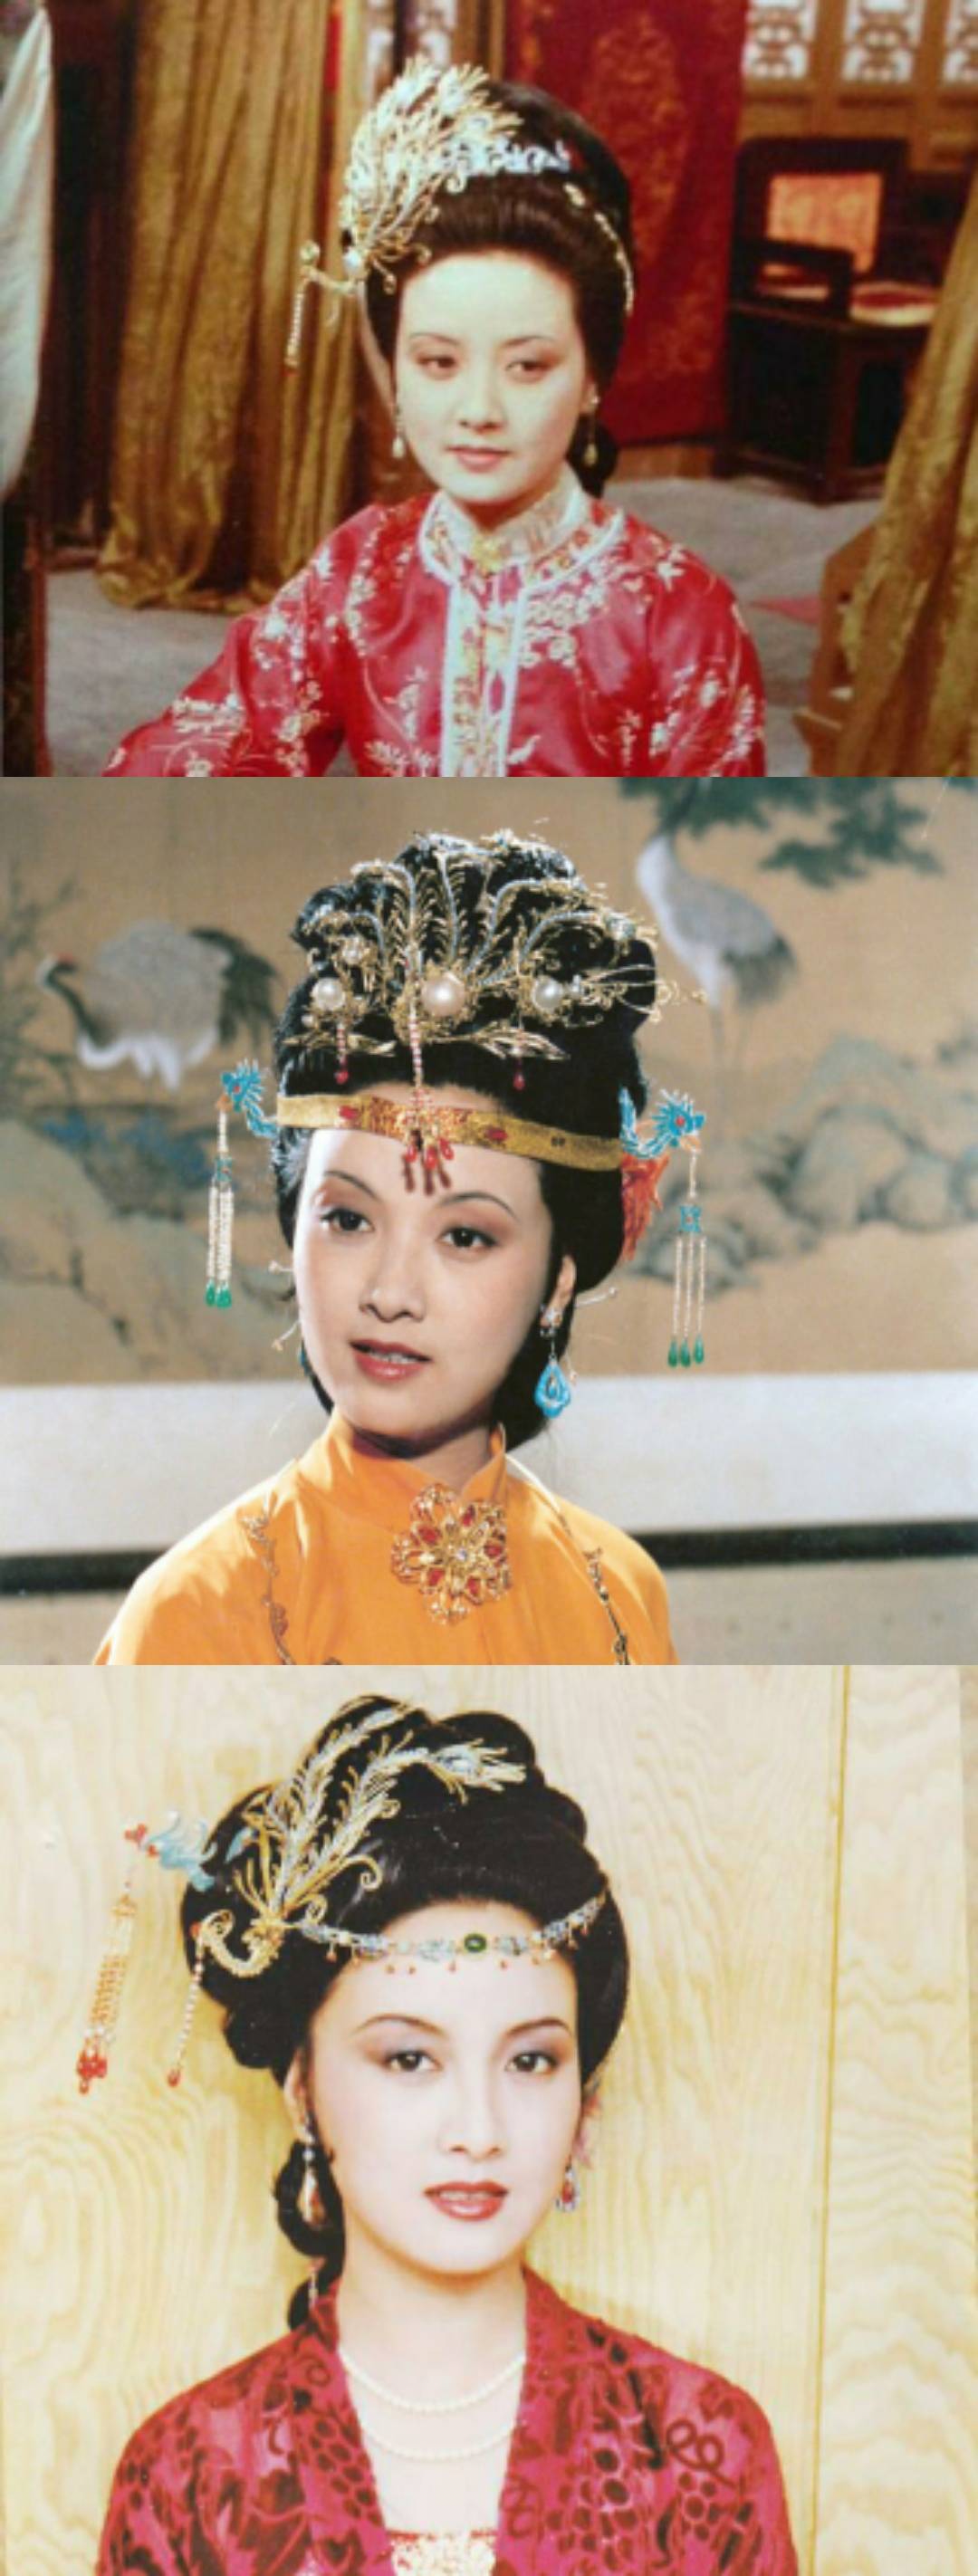 王熙凤性格泼辣,是贾府的少奶奶,她的发型多是各种盘起来的发髻,发饰